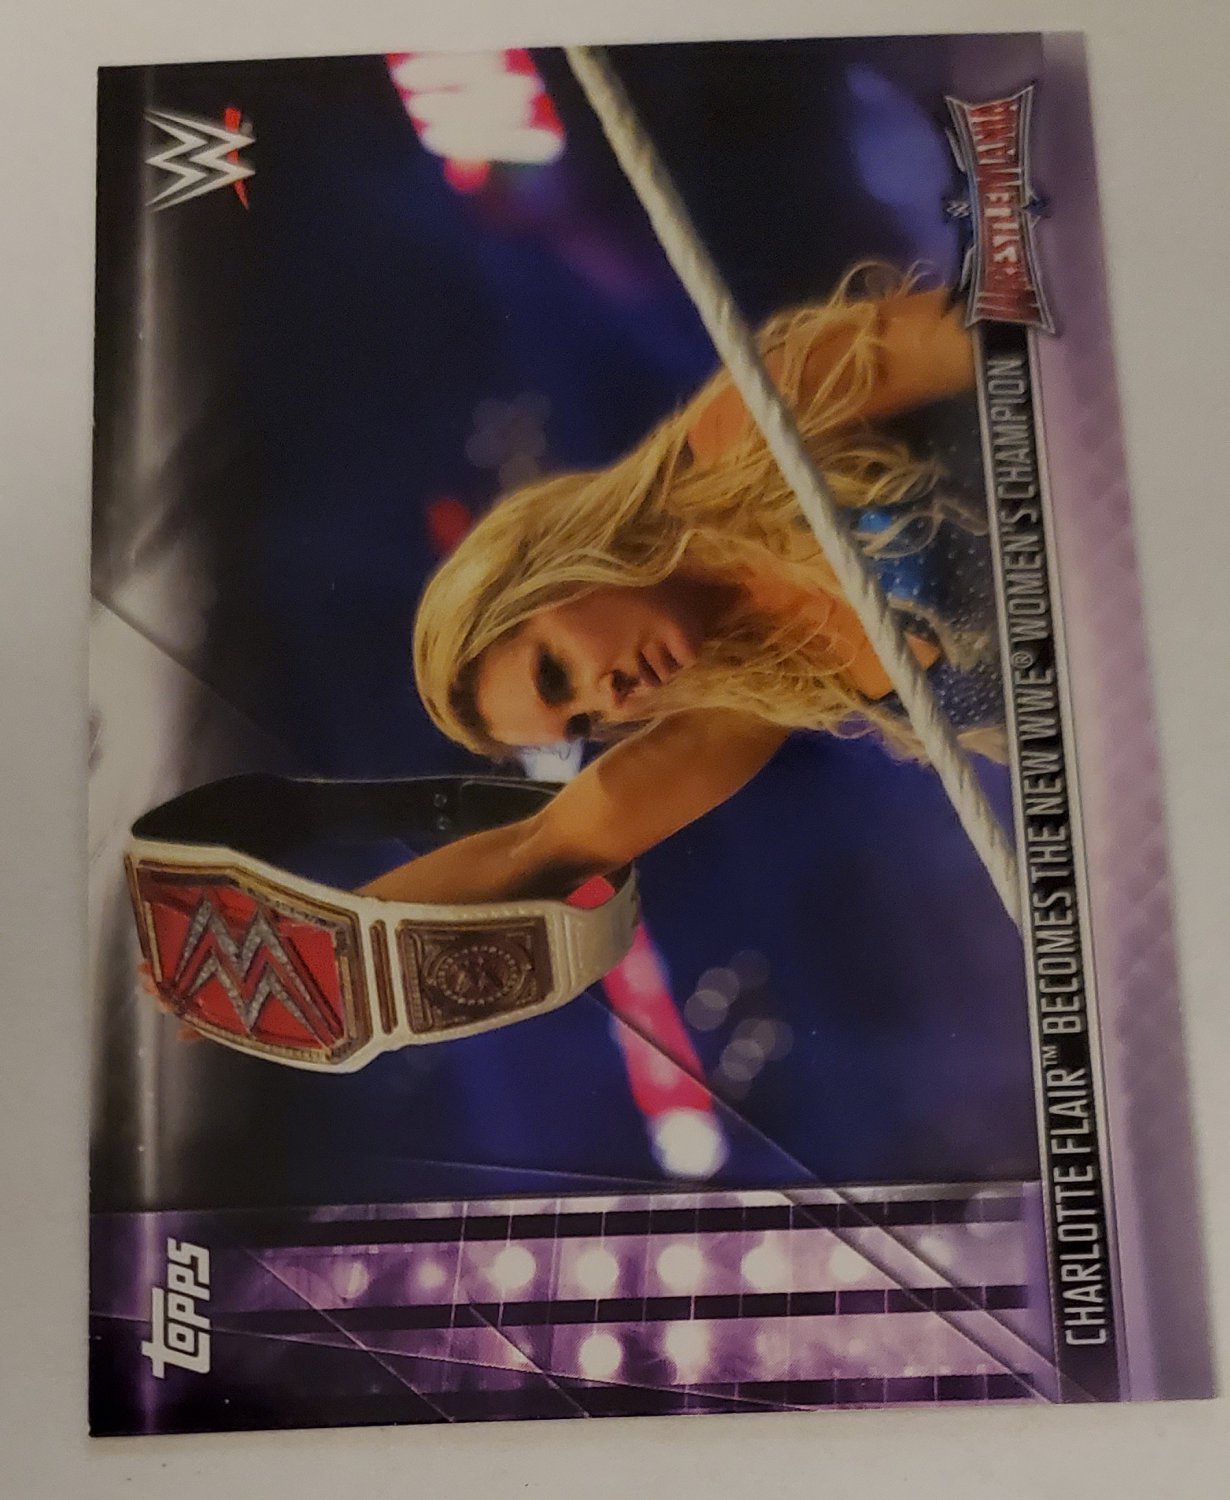 Charlotte Flair 2019 Topps WWE Womens Revolution Insert Card